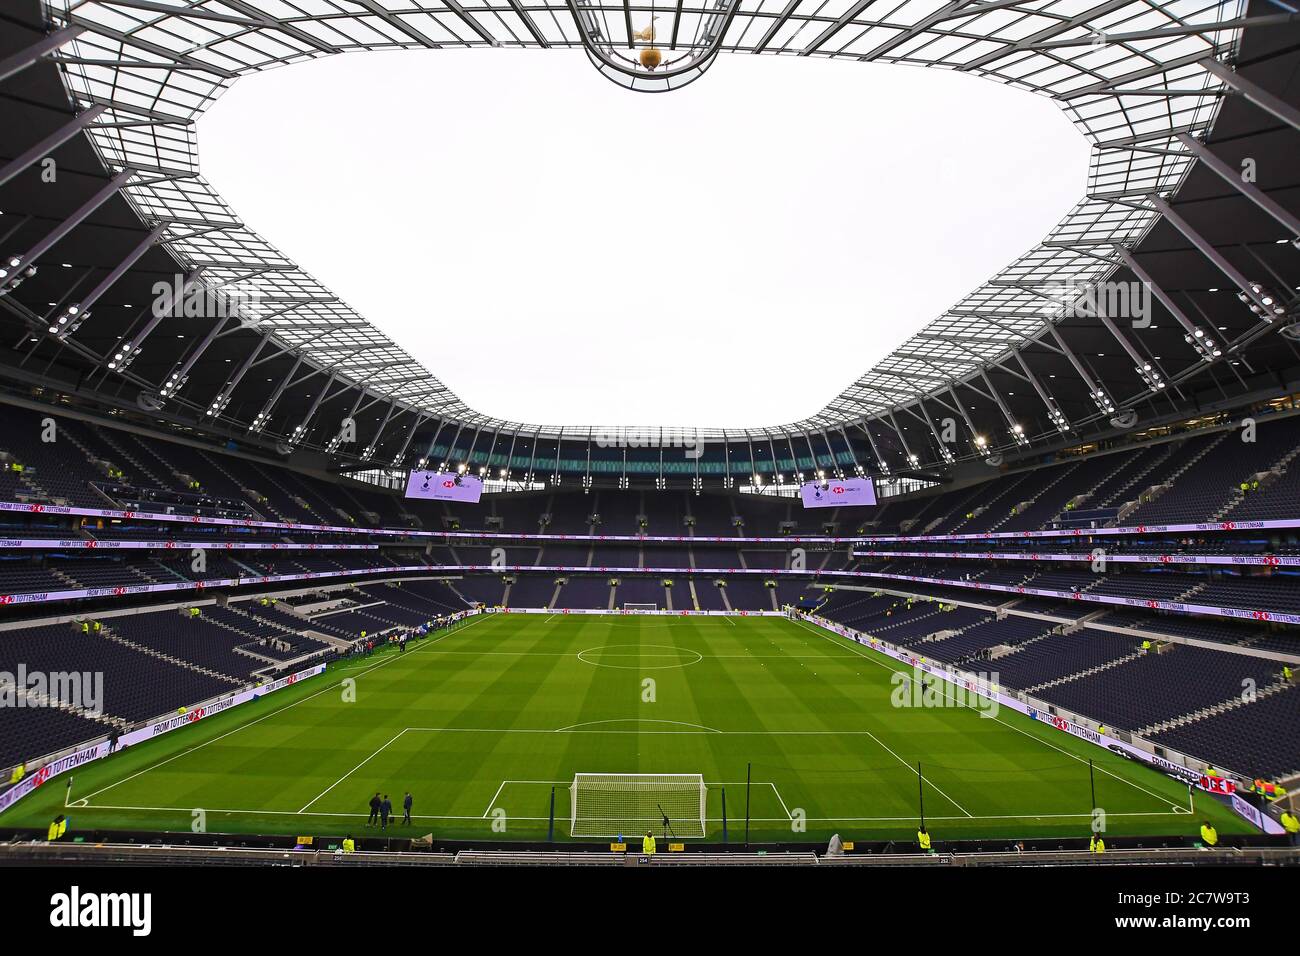 LONDRA, INGHILTERRA - 2 FEBBRAIO 2020: Vista generale del nuovo Tottenham Hotspur Stadium raffigurato prima della partita della Premier League 2019/20 tra Tottenham Hotspur e Manchester City allo stadio Tottenham Hotspur. Foto Stock